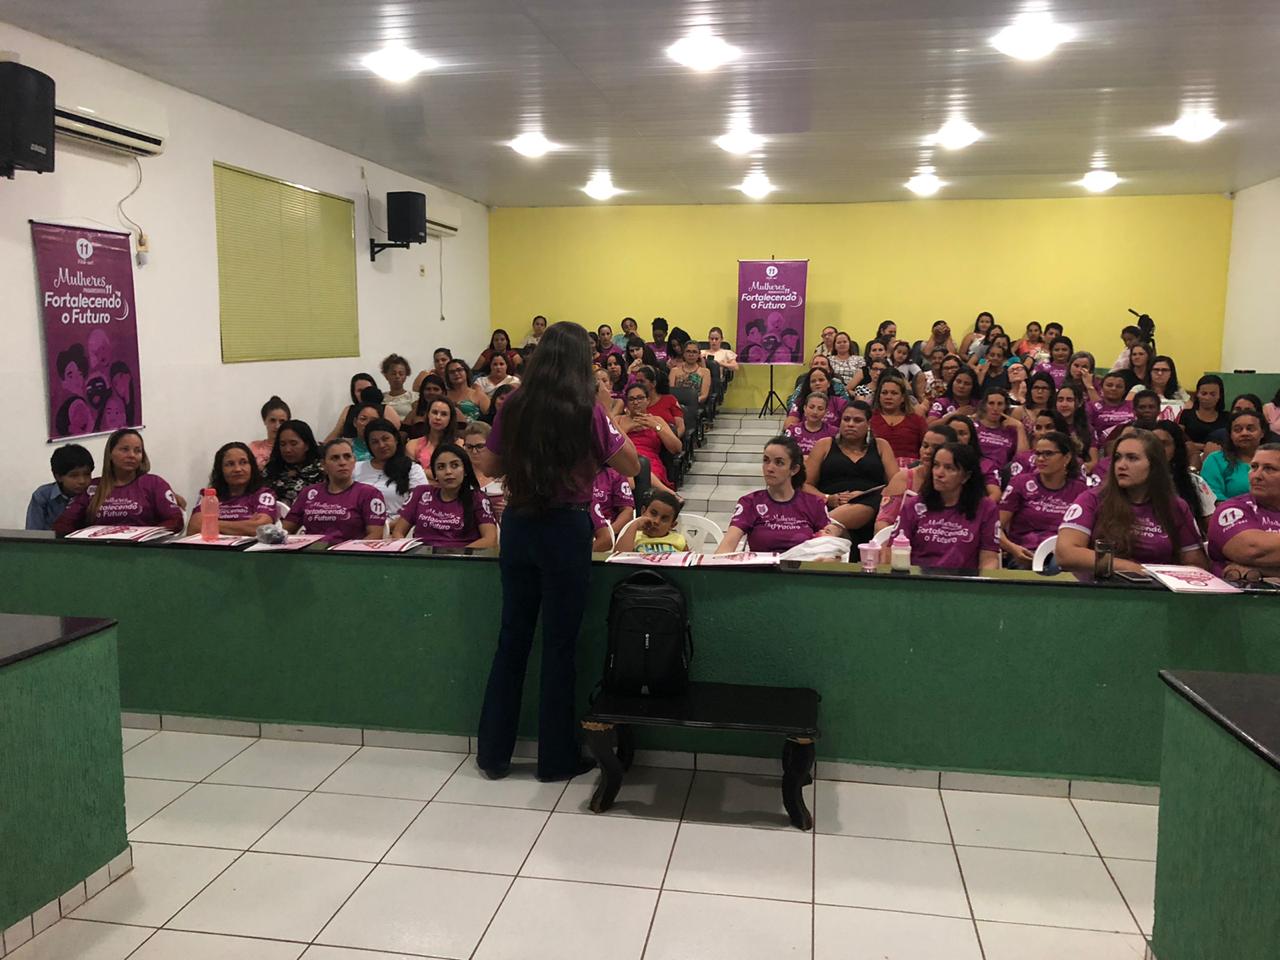 Sucesso de público no Encontro das Mulheres Progressistas realizado em Alta Floresta - progressistas - progressistas rondonia